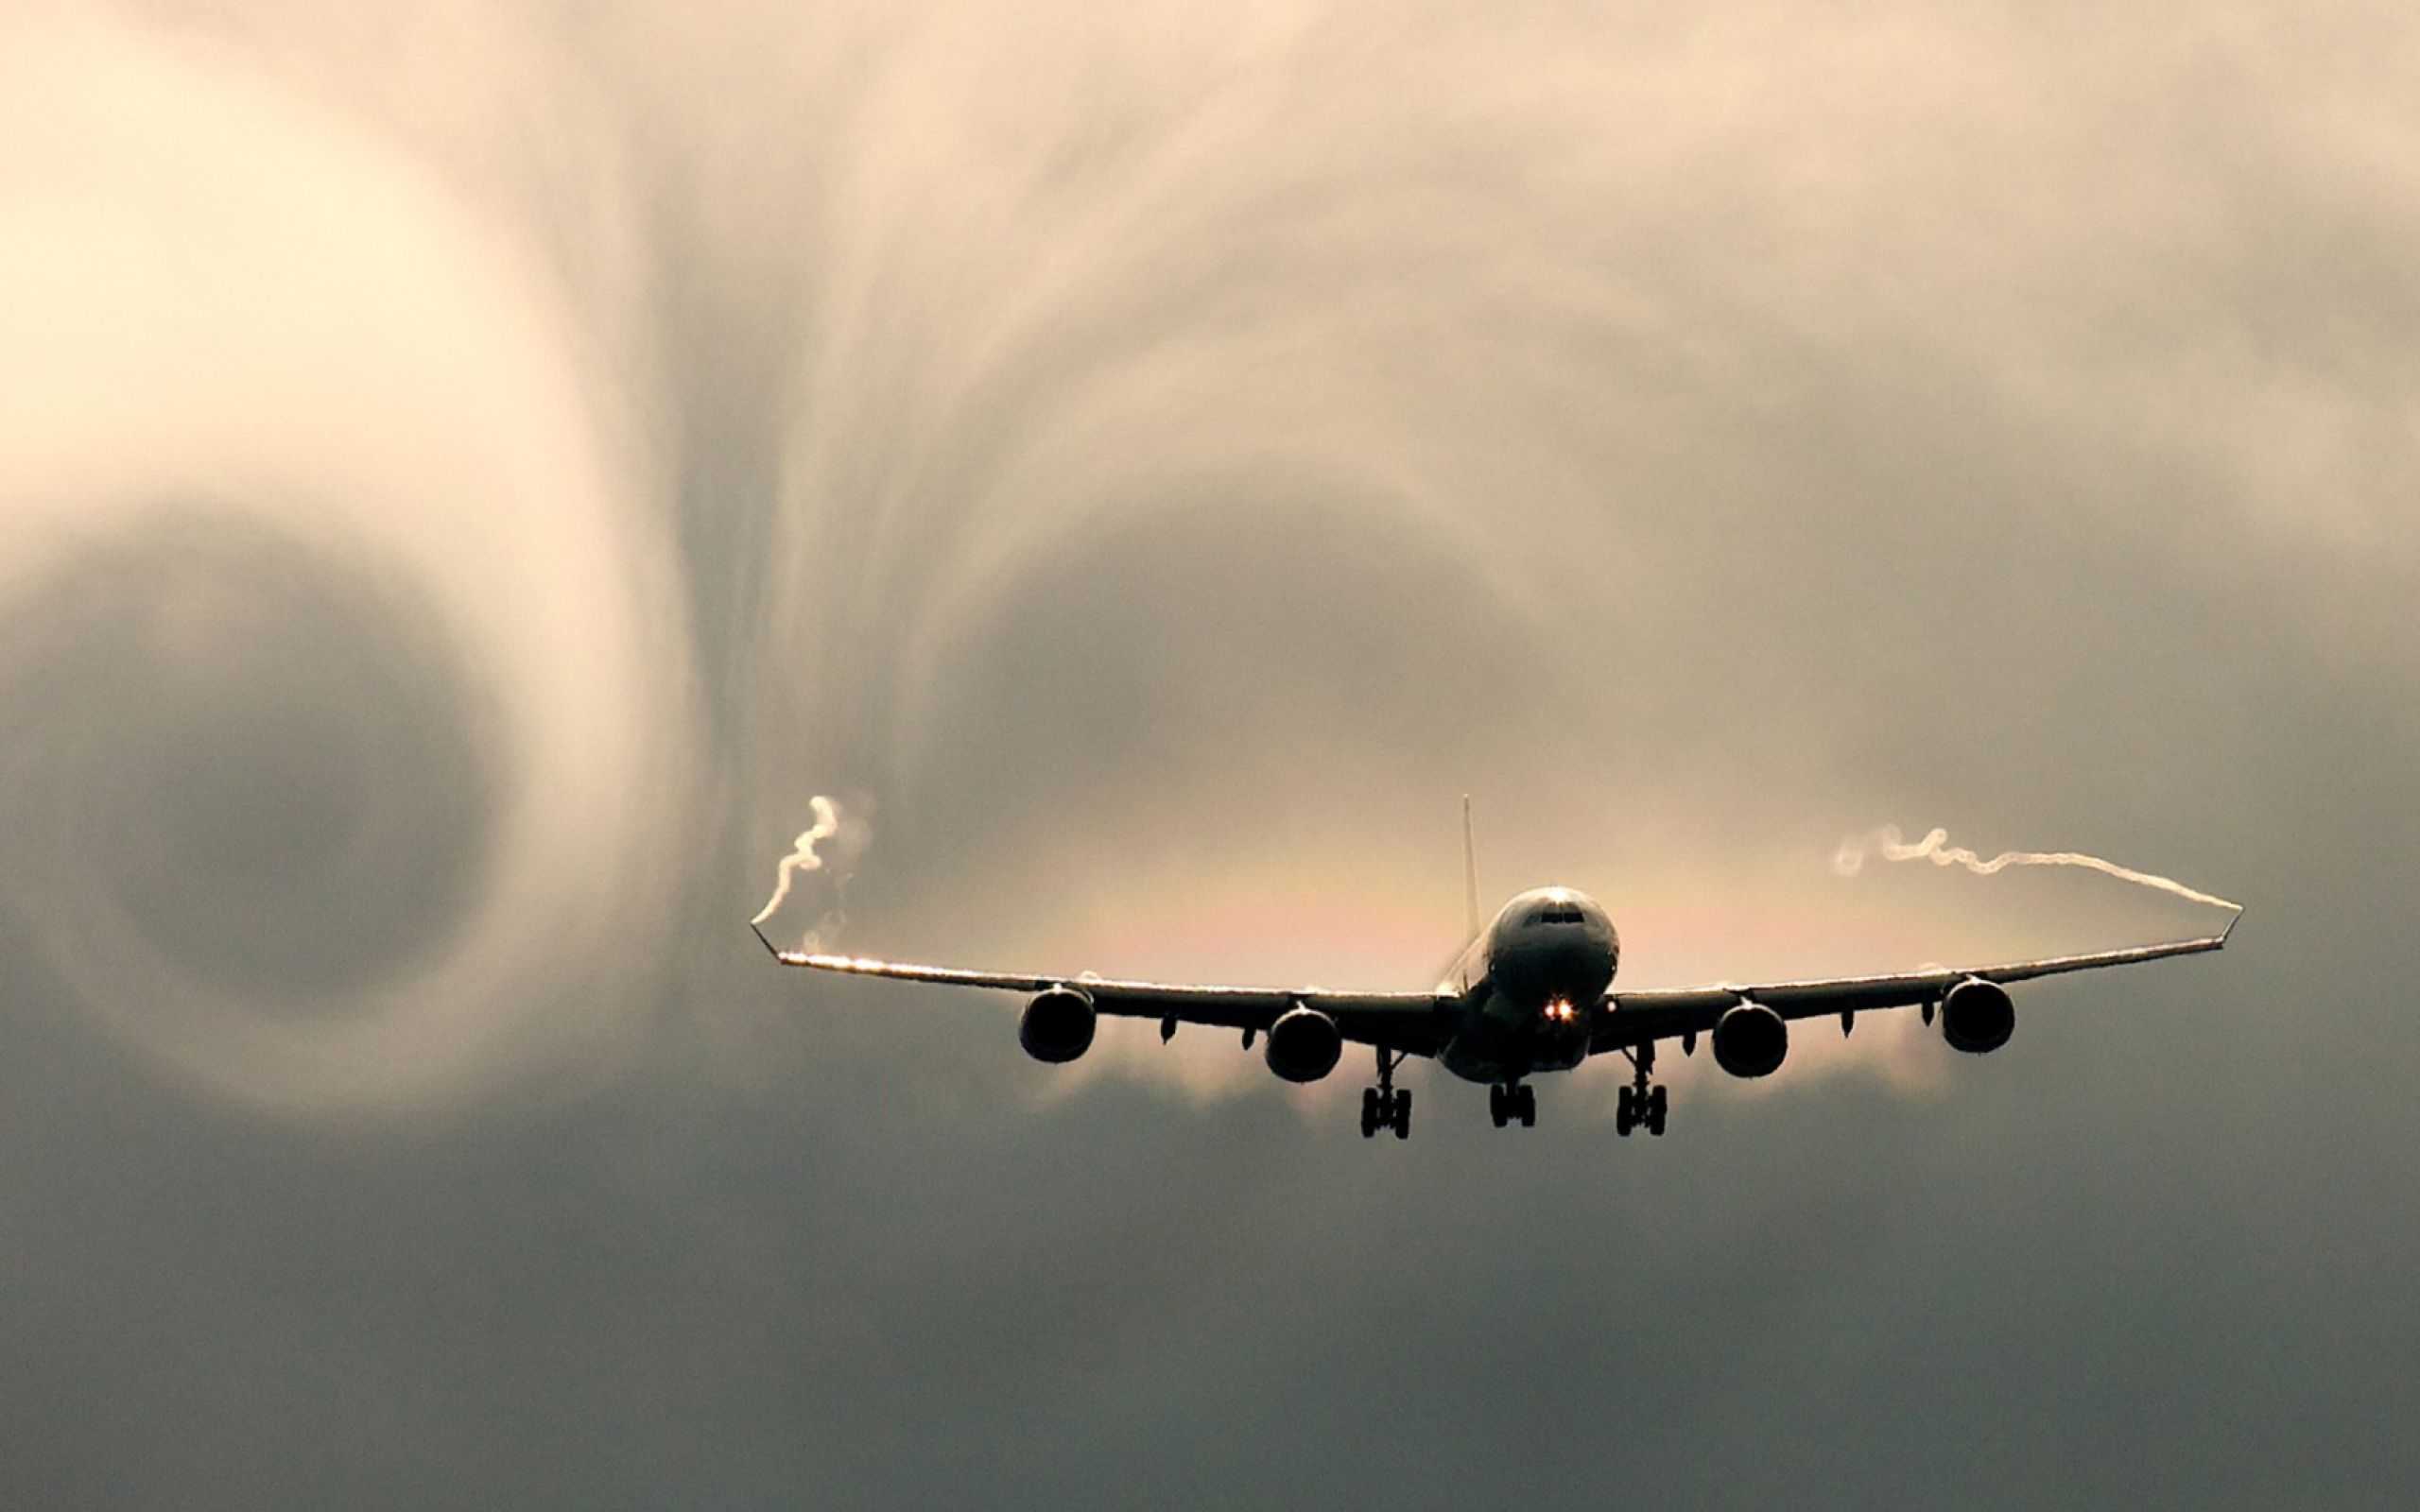 В связи с климатическими изменениями, турбулентность станет всё более распространенным явлением для самолетов